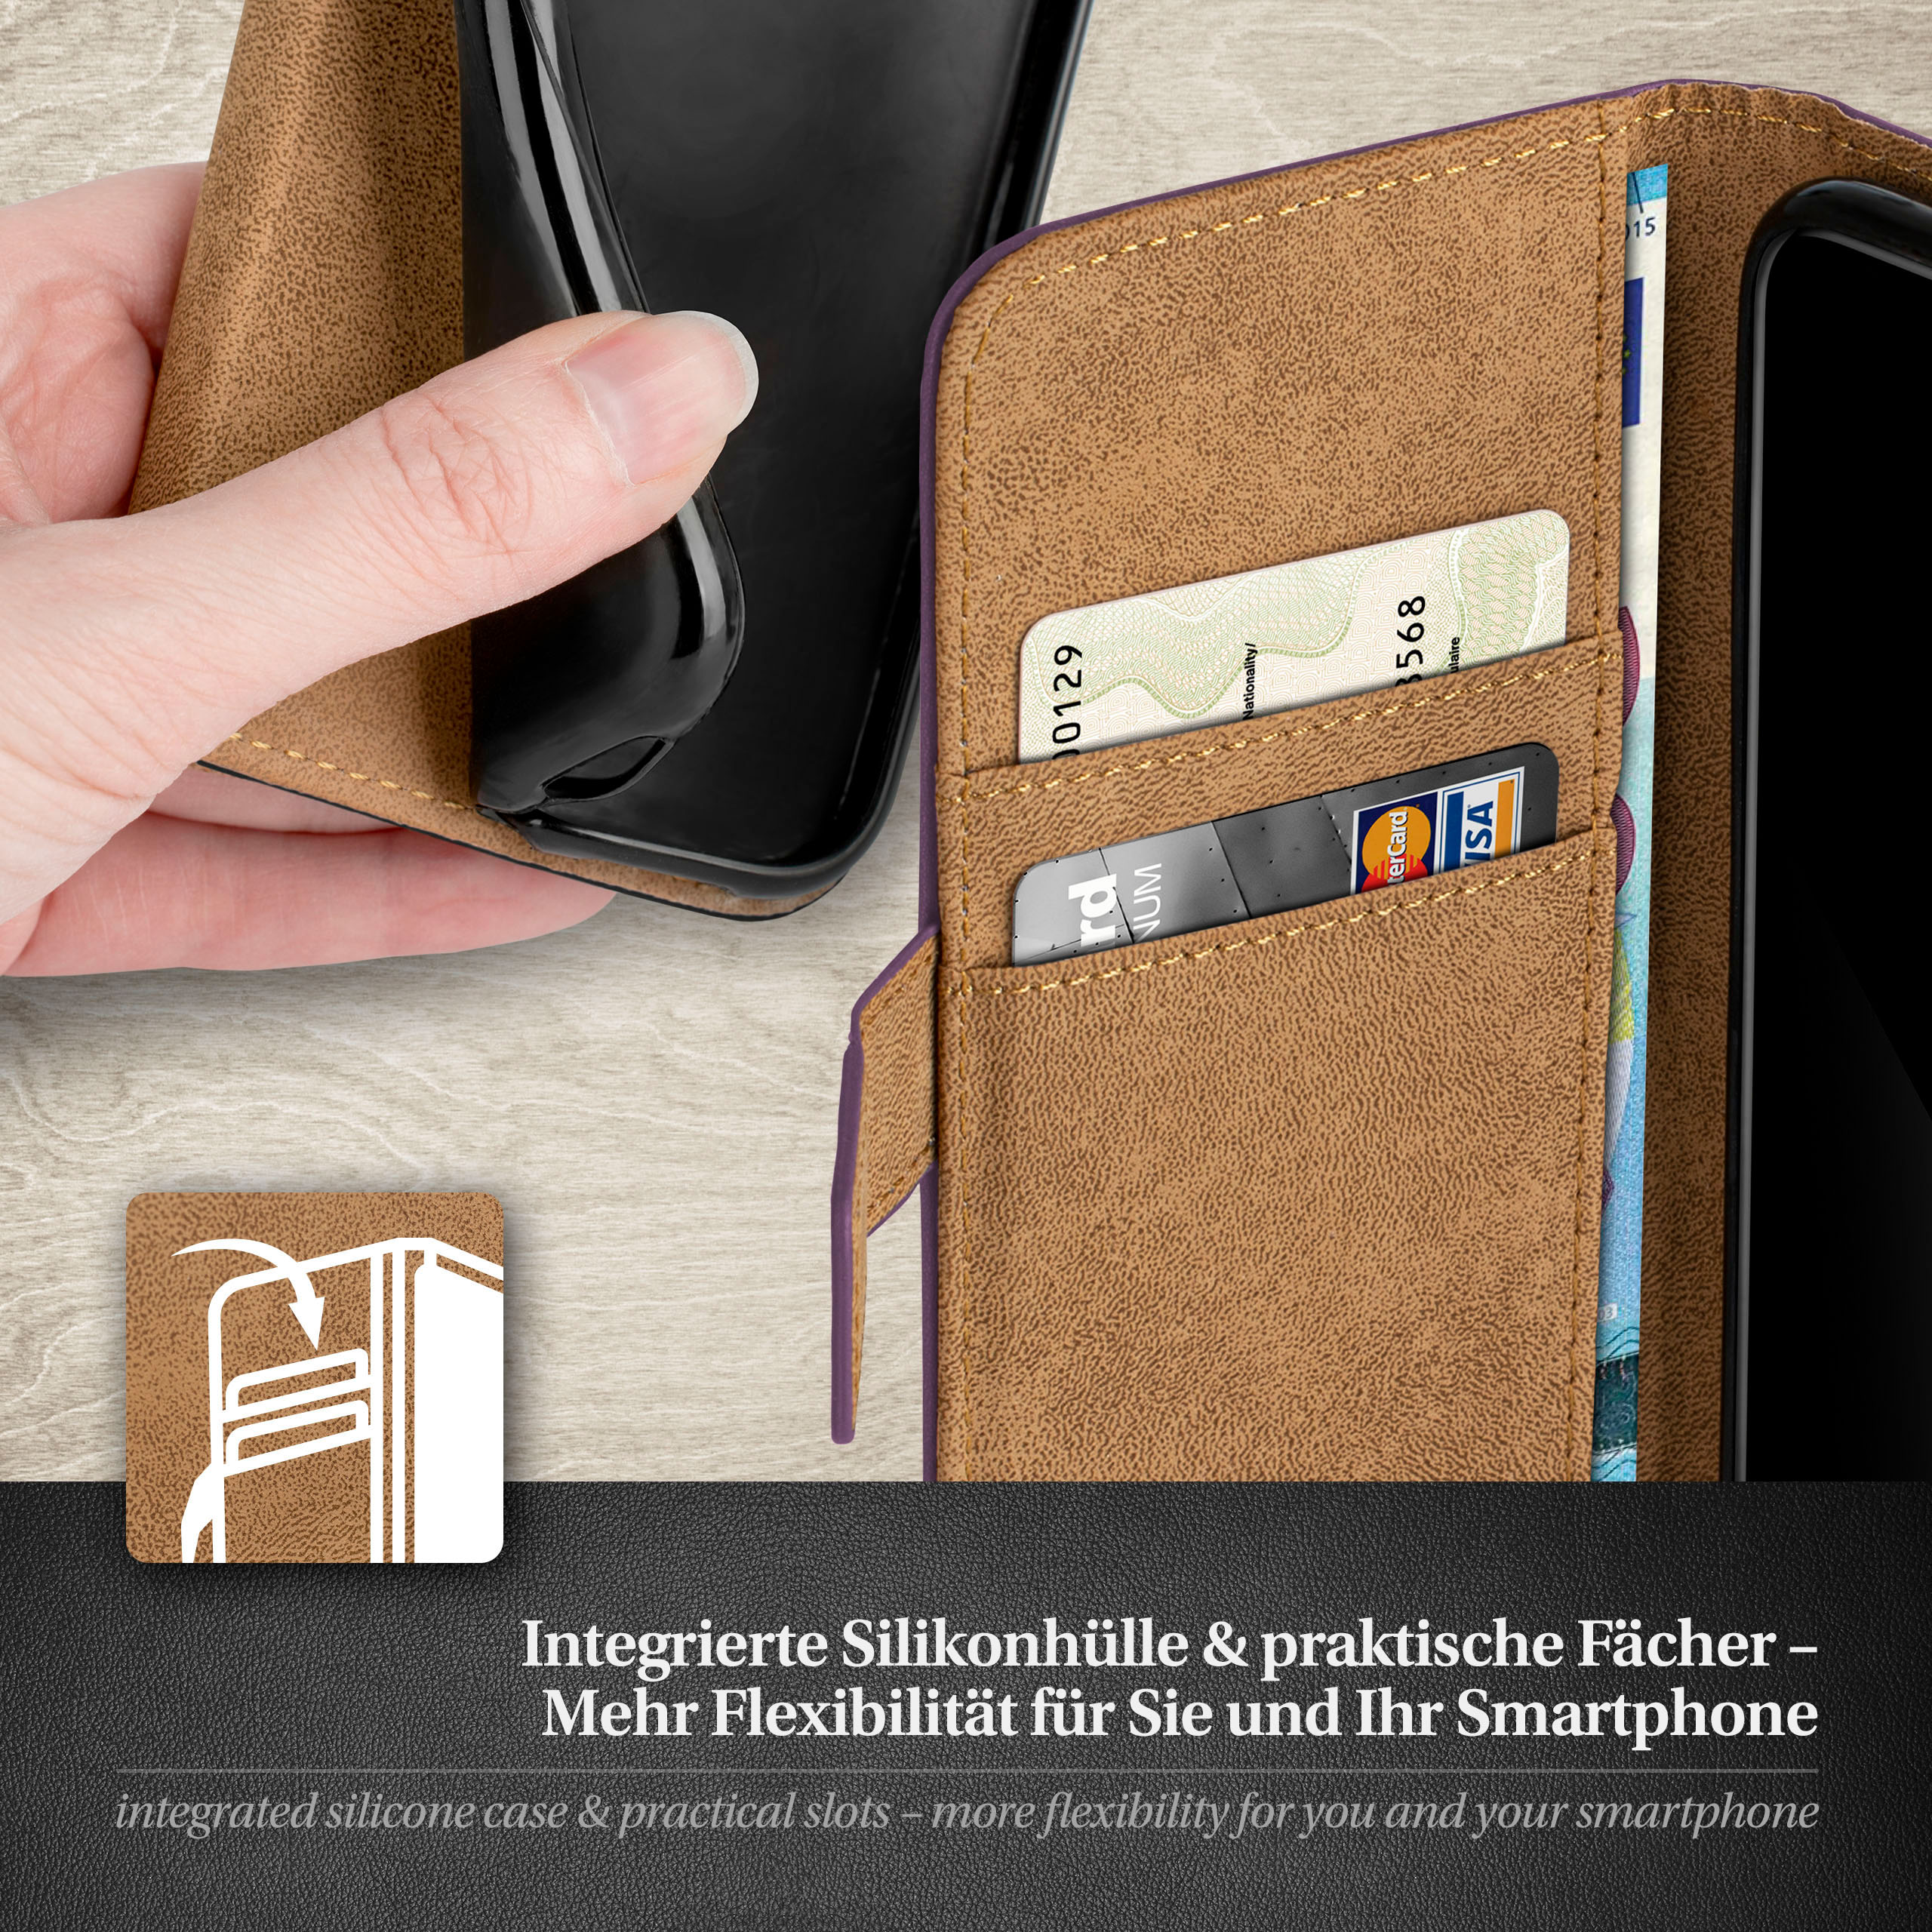 MOEX Samsung, Book Galaxy Indigo-Violet S6, Bookcover, Case,